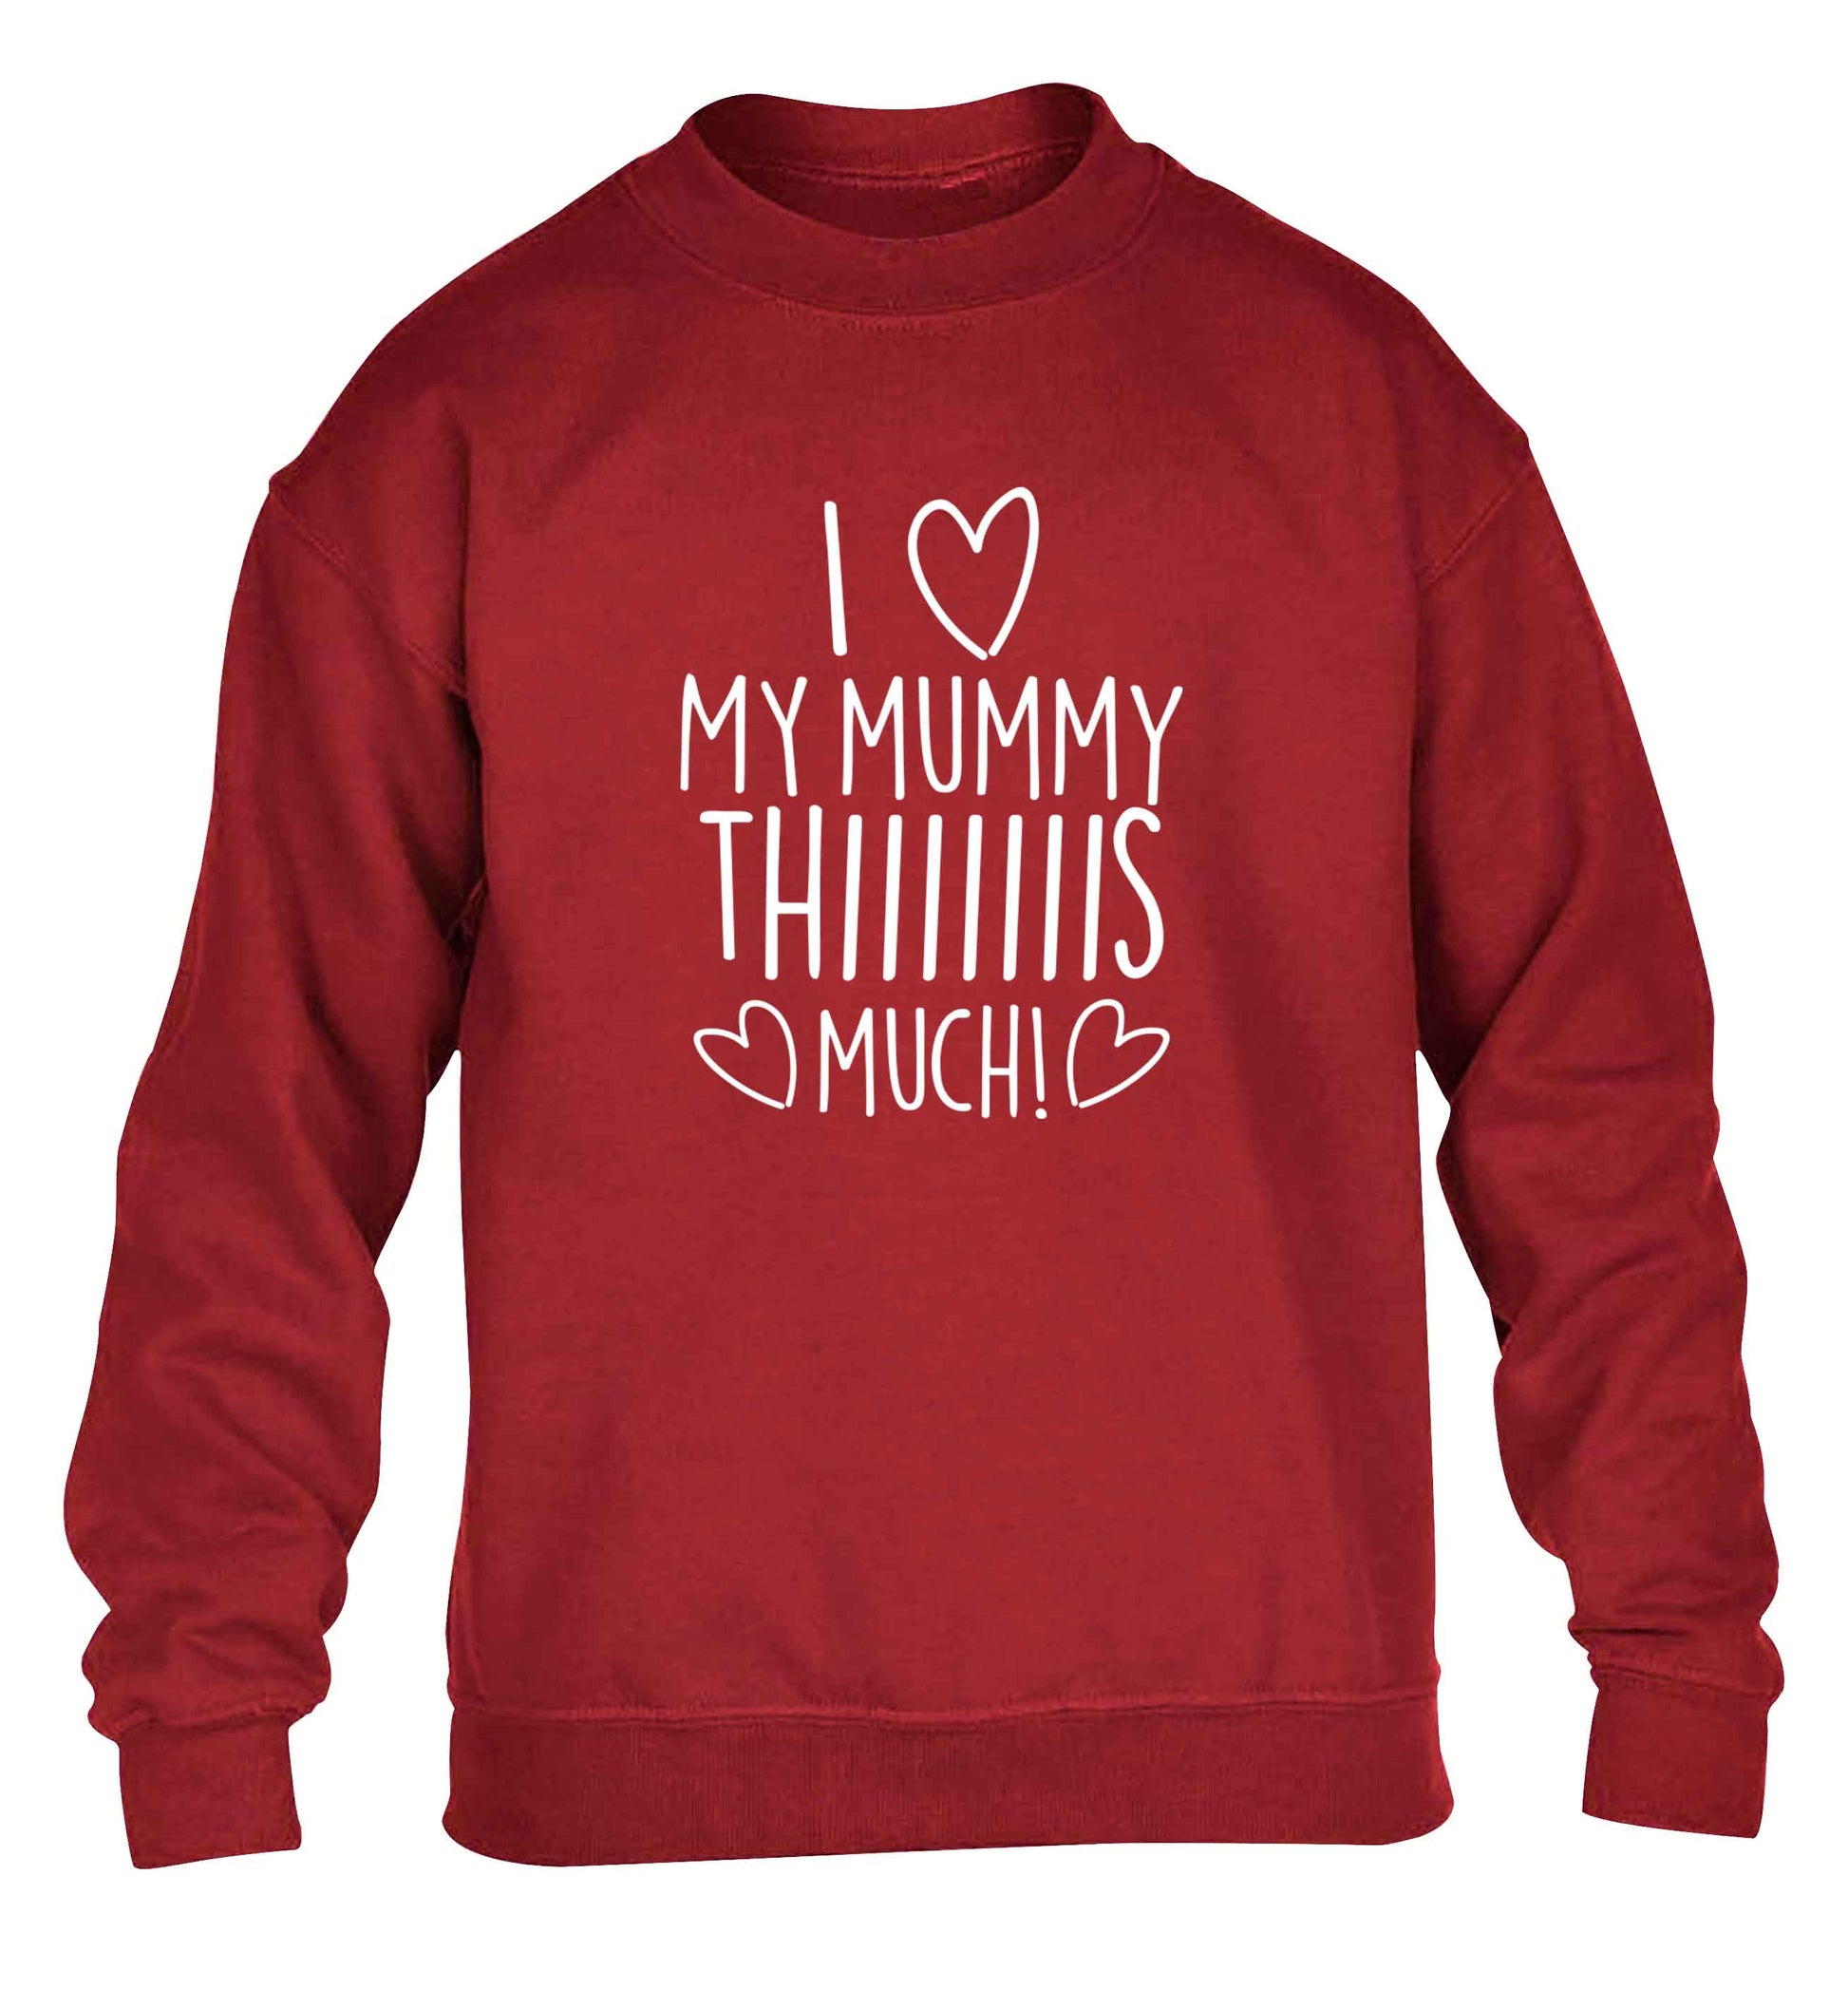 I love my mummy thiiiiis much! children's grey sweater 12-13 Years